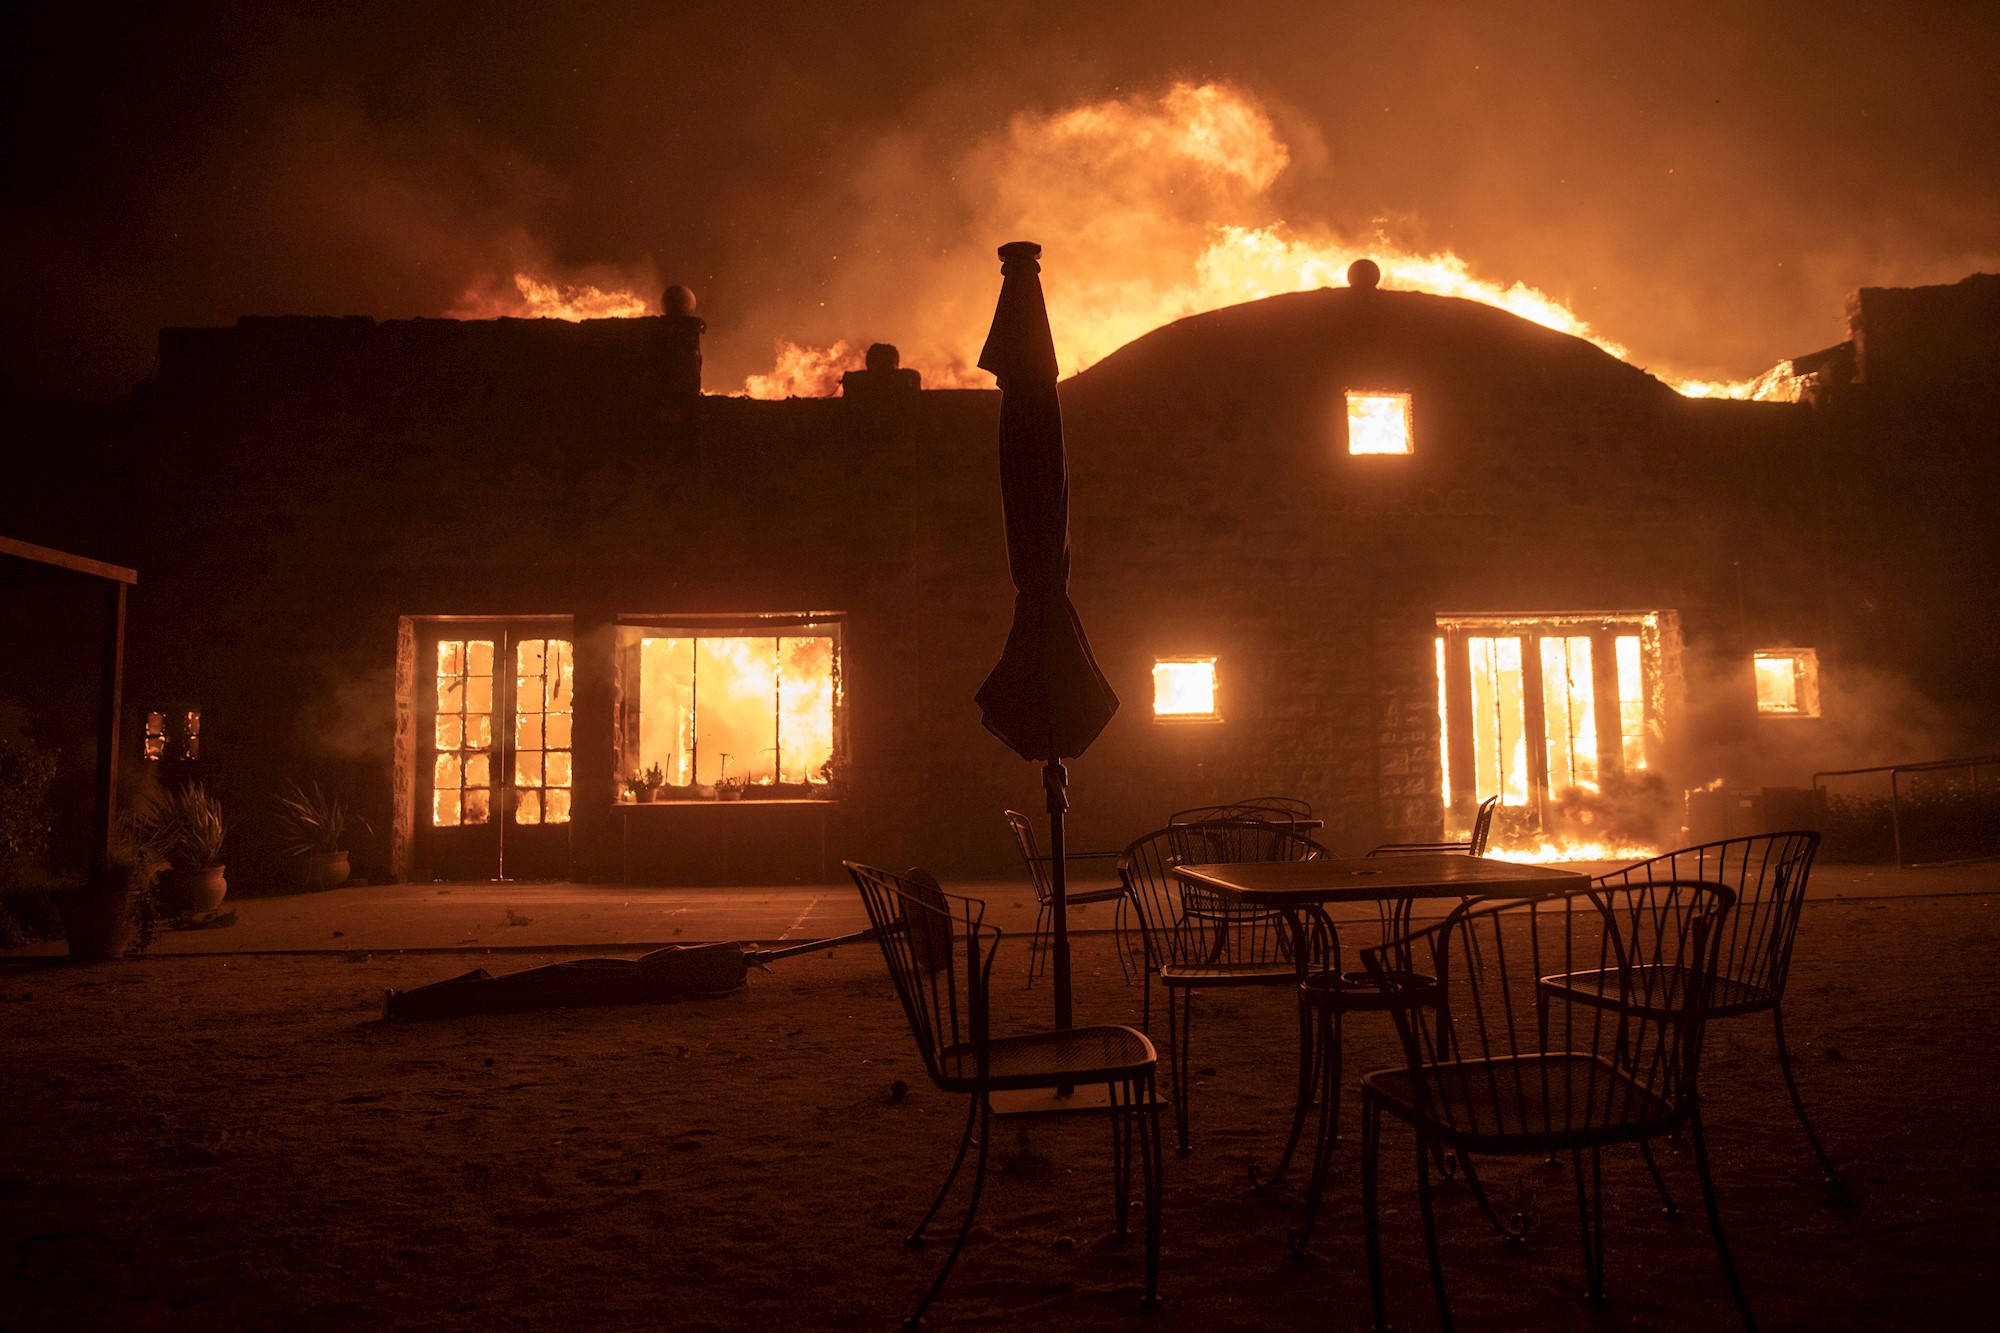 Lebron James desalojado de su casa por los incendios que asolan California